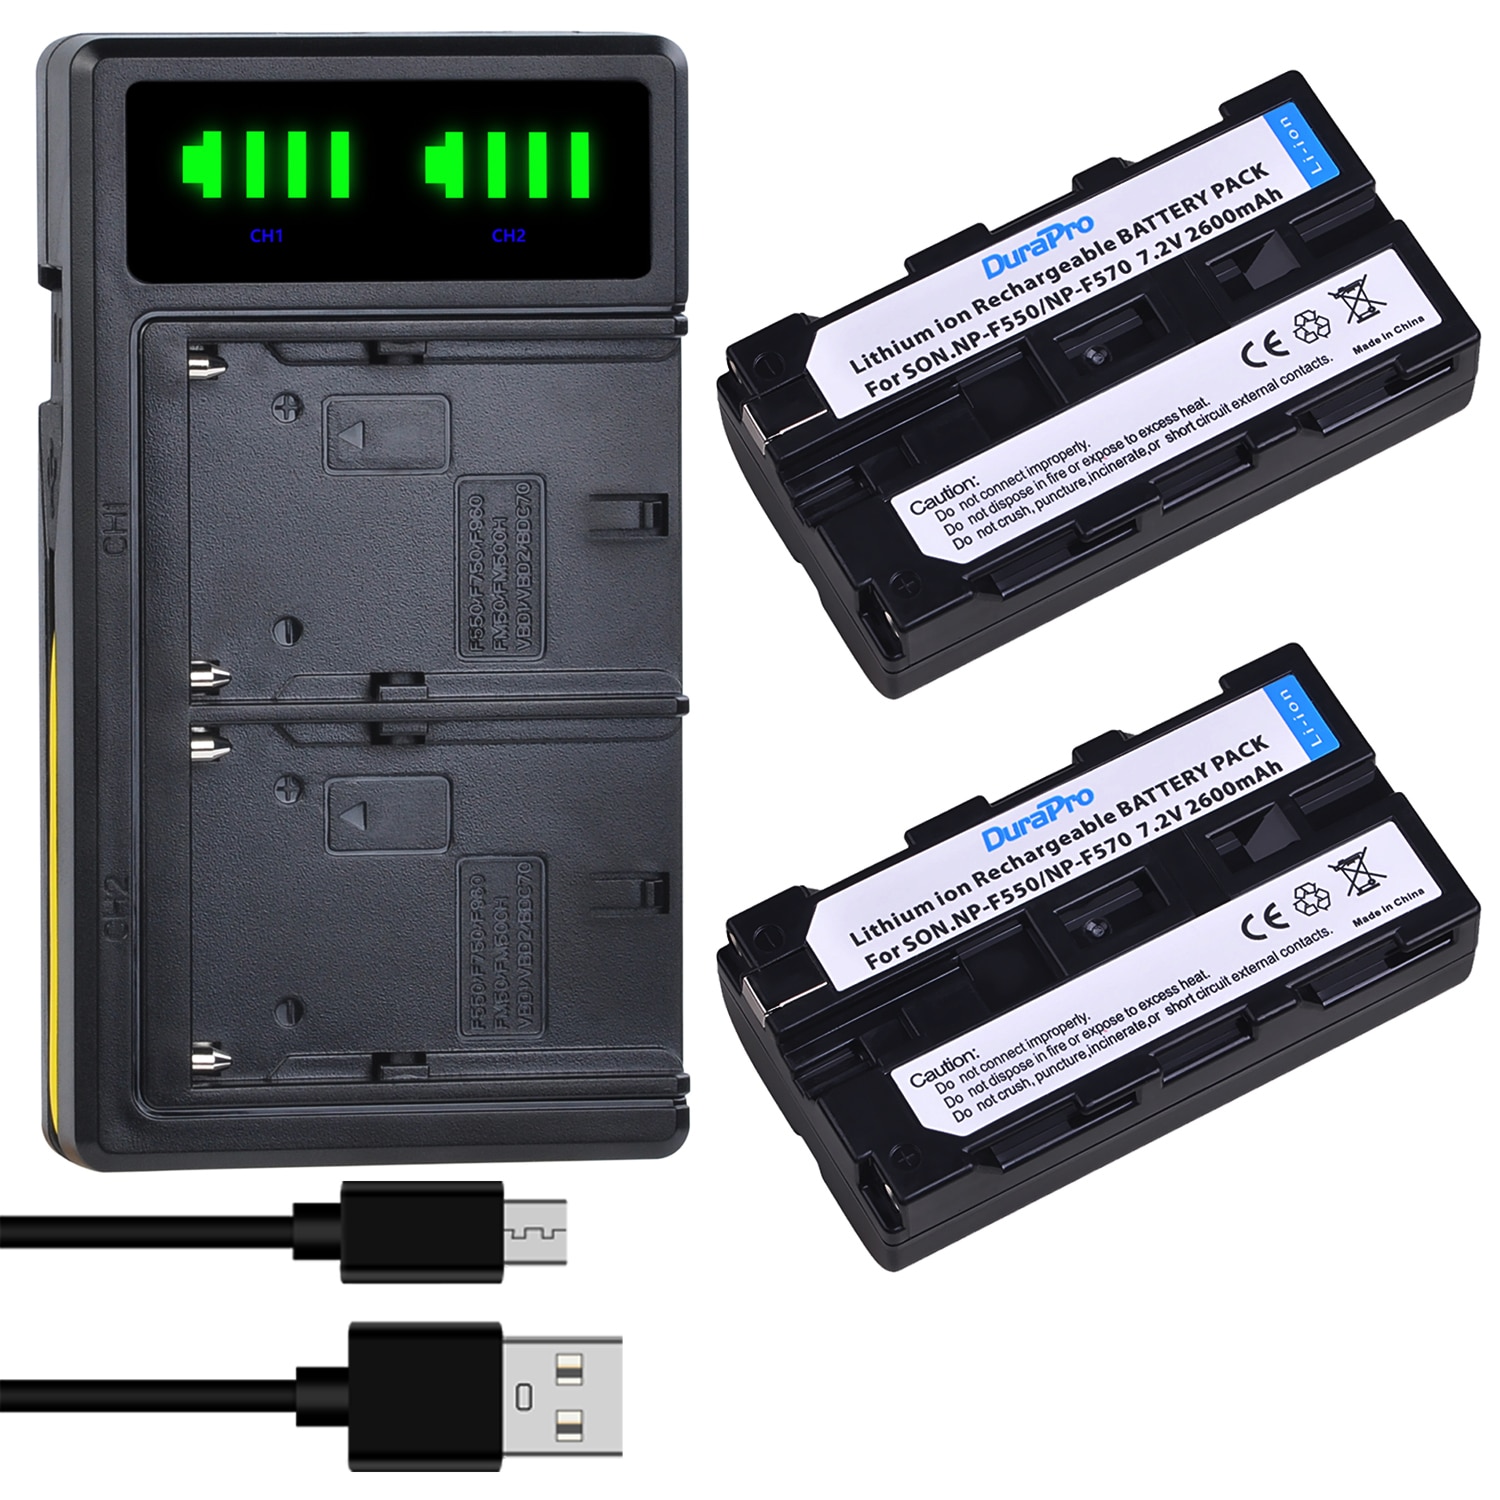 DuraPro-Batería de cámara de NP-F550 de 2600mAH, cargador Dual LED USB para Sony NP-F570, NP-F570, NP-F750 para luz de vídeo LED